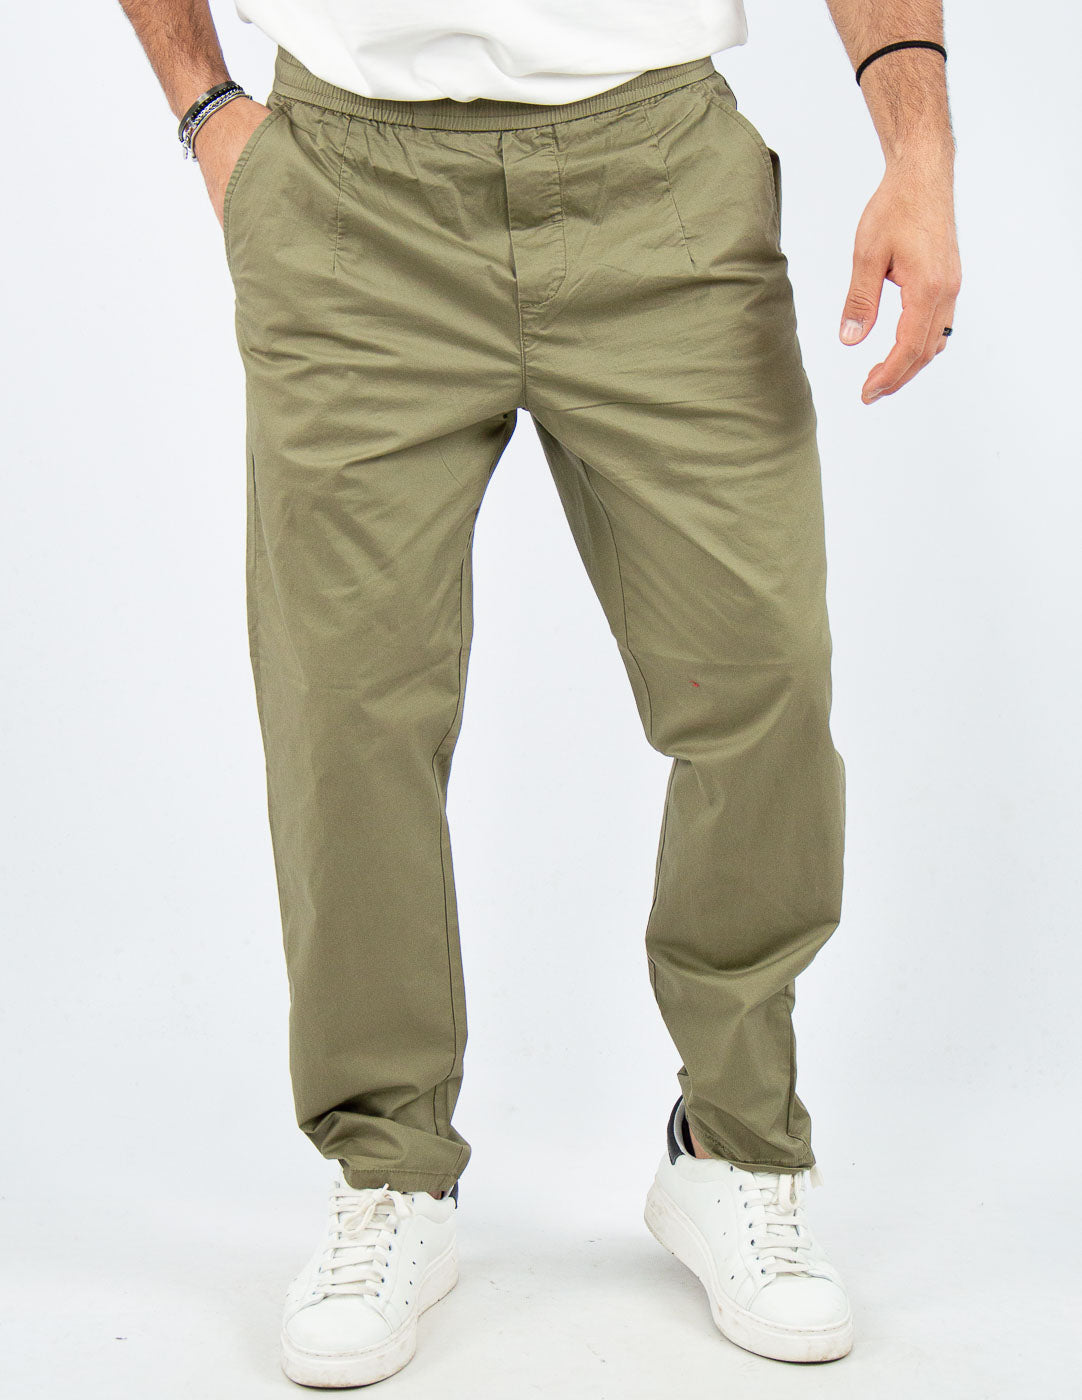 pantalone uomo in cotone con elastico